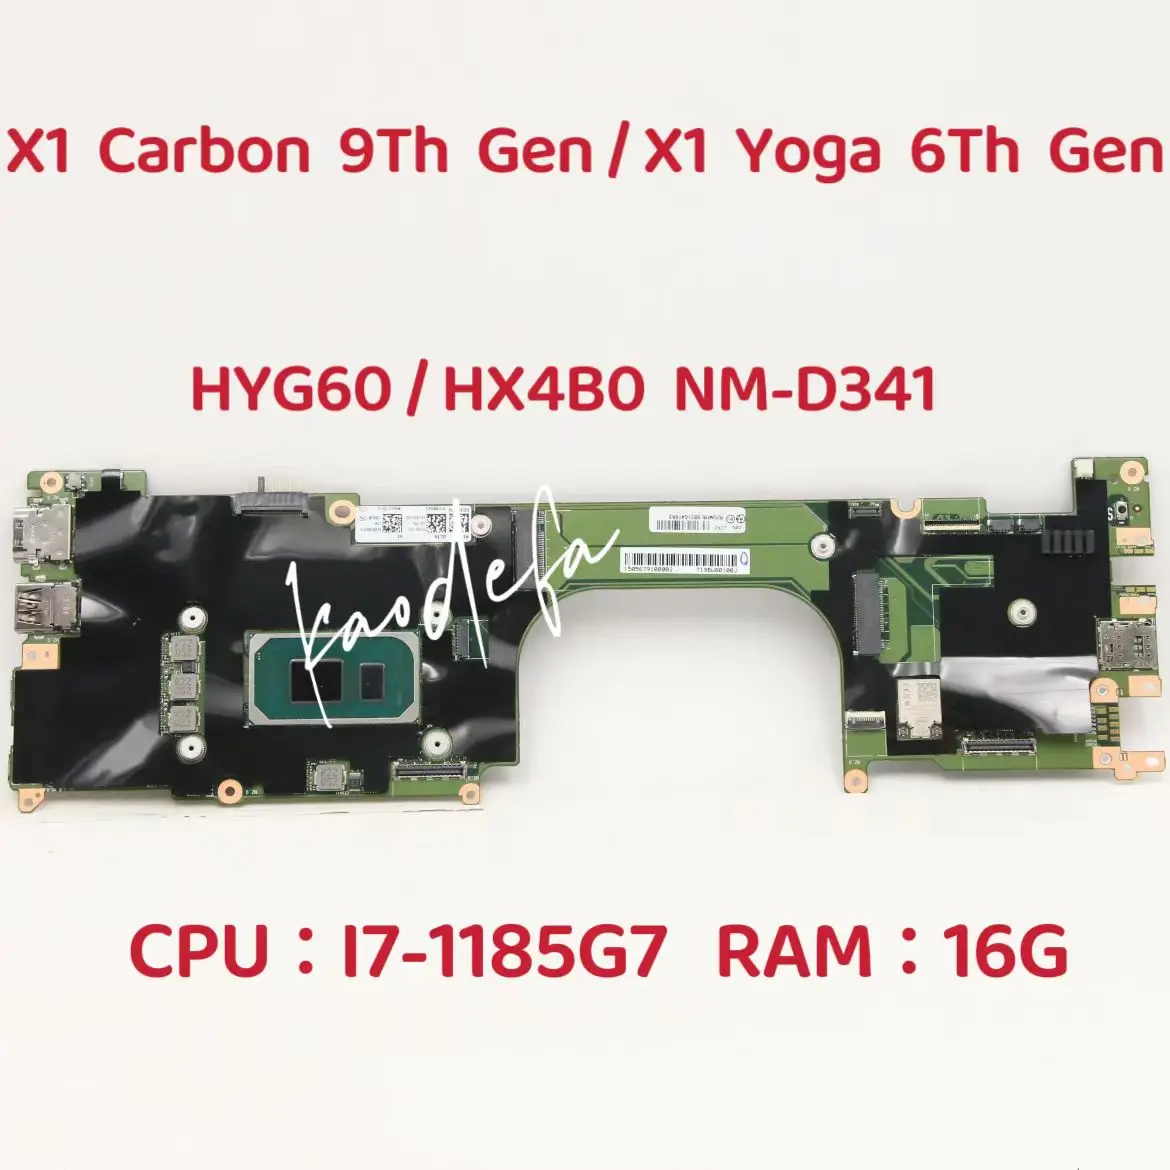 X1 Yoga 6 Gen placa-mãe Para o ThinkPad X1 Carbon 9ª Geração do Portátil placa-Mãe CPU: I7-1185G7 RAM:16G DDR4 NM-D341 FRU:5B21C41883